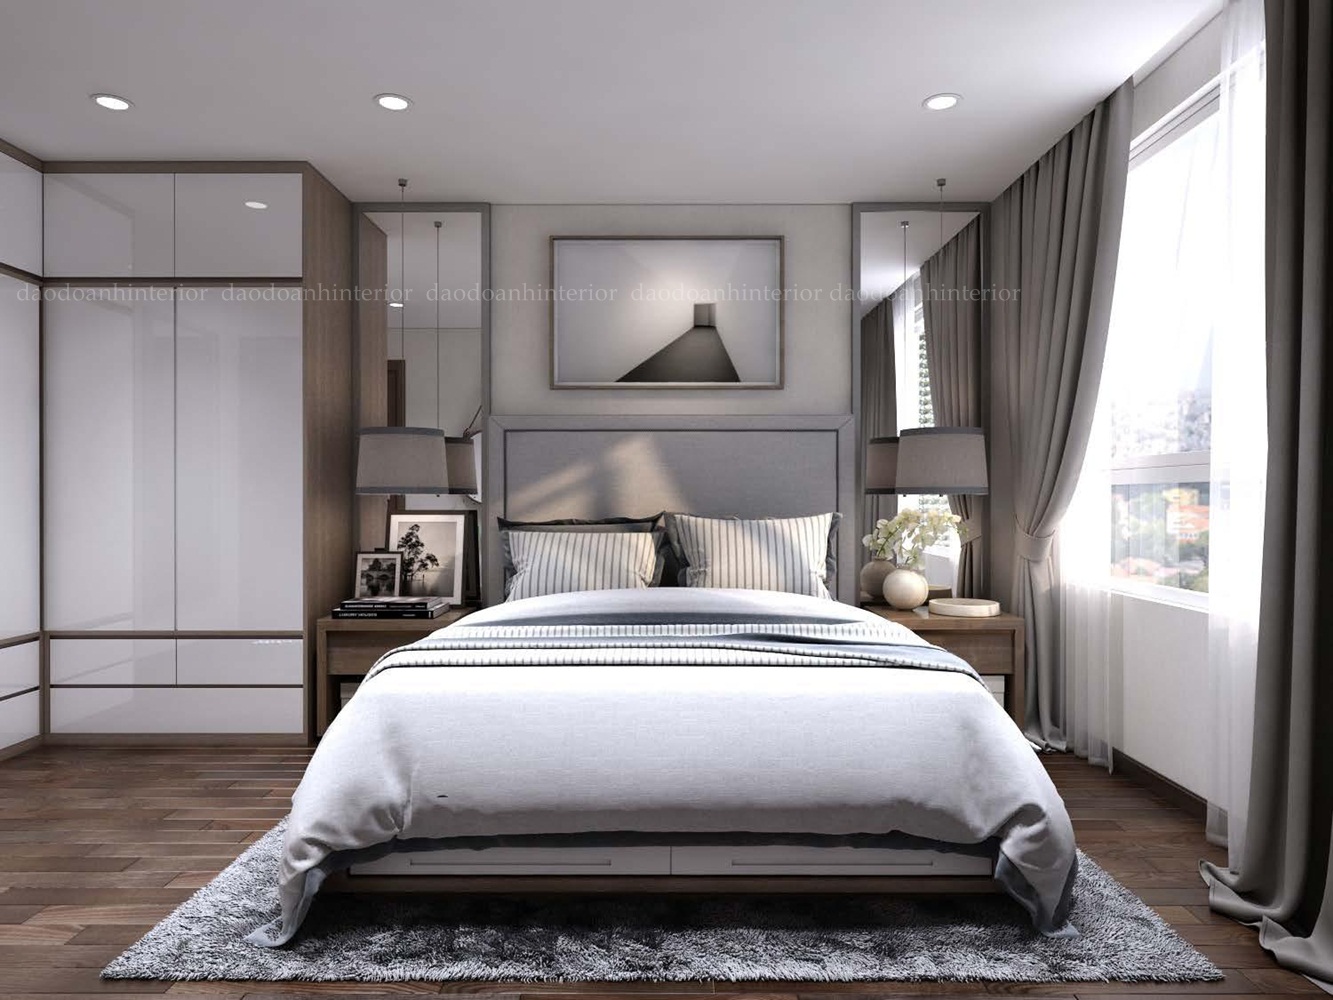 Mẫu thiết kế nội thất phòng ngủ với không gian sáng, tông màu chủ đạo là xám trắng.